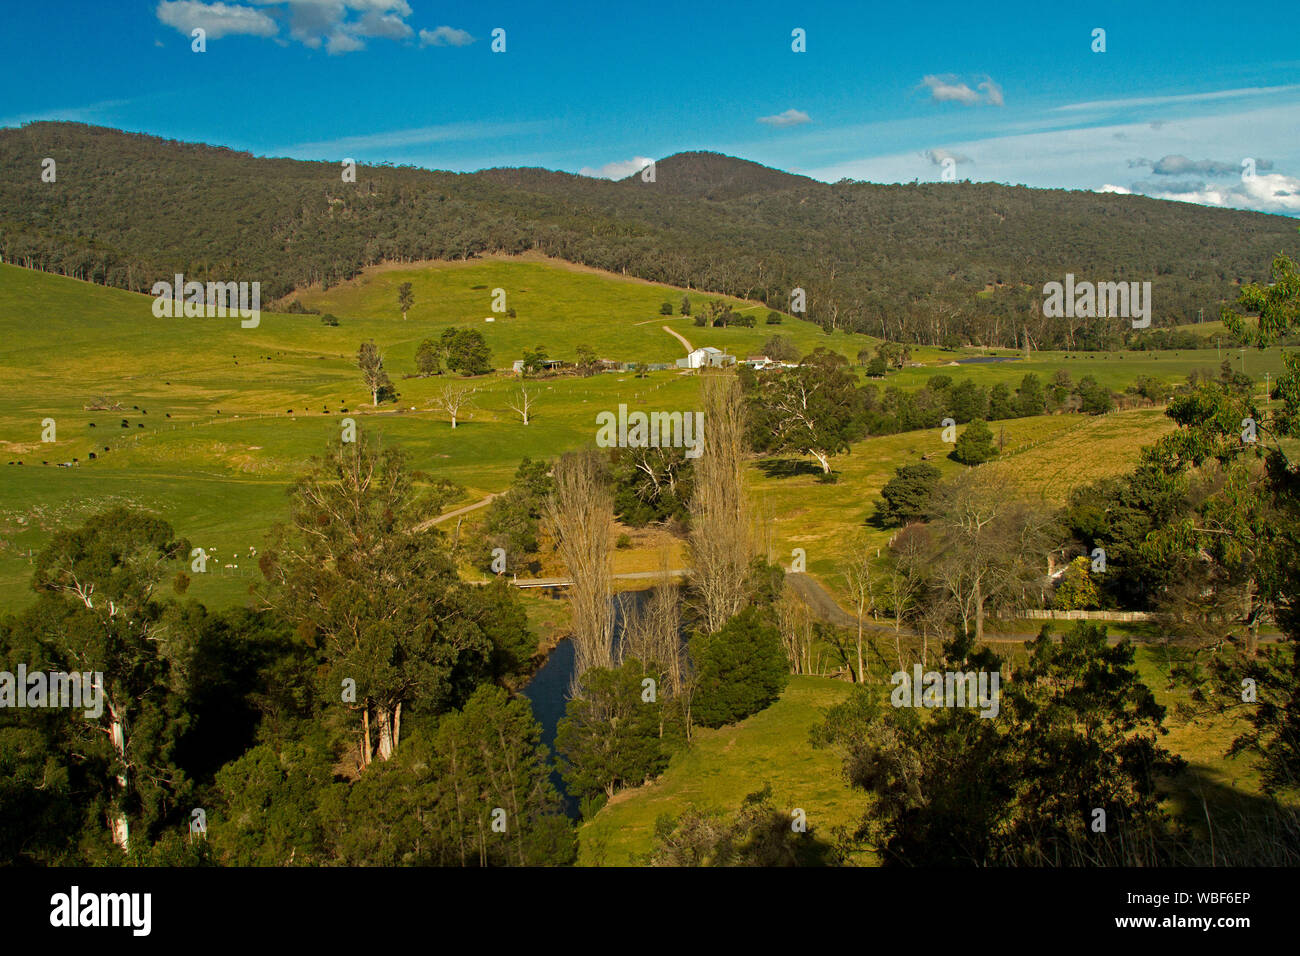 Paysage rural et agricole parmi les collines vertes et boisées à côté de flux avec des gammes s'élevant dans le ciel bleu à Victoria en Australie Banque D'Images